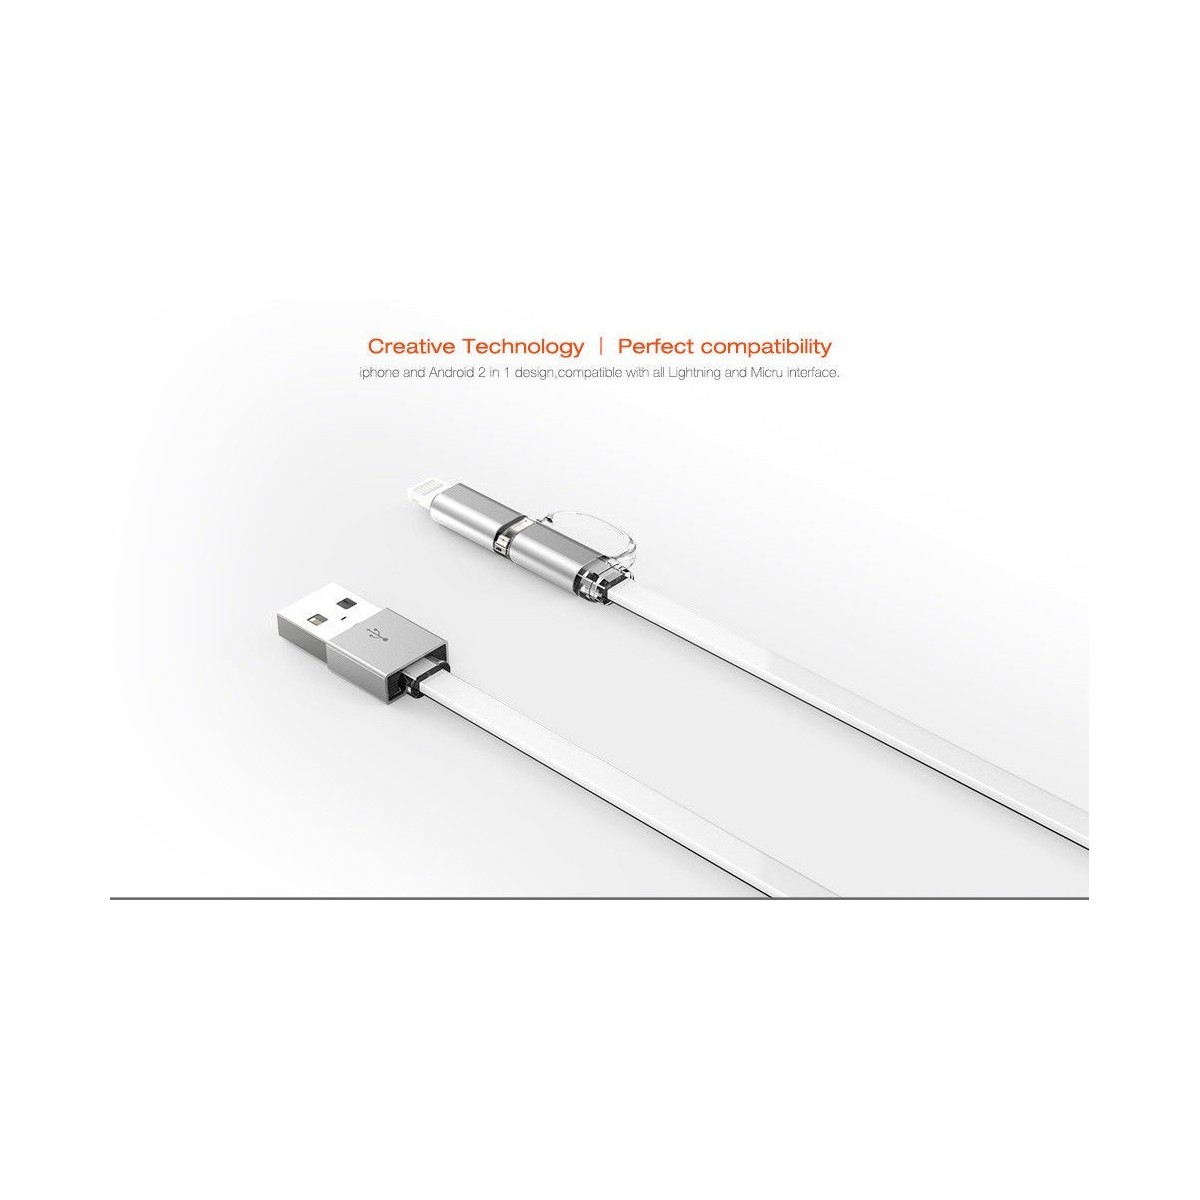 Câble 2 en 1 (Pour iPhone+Micro-USB) LDNIO LC84 Argent 1m